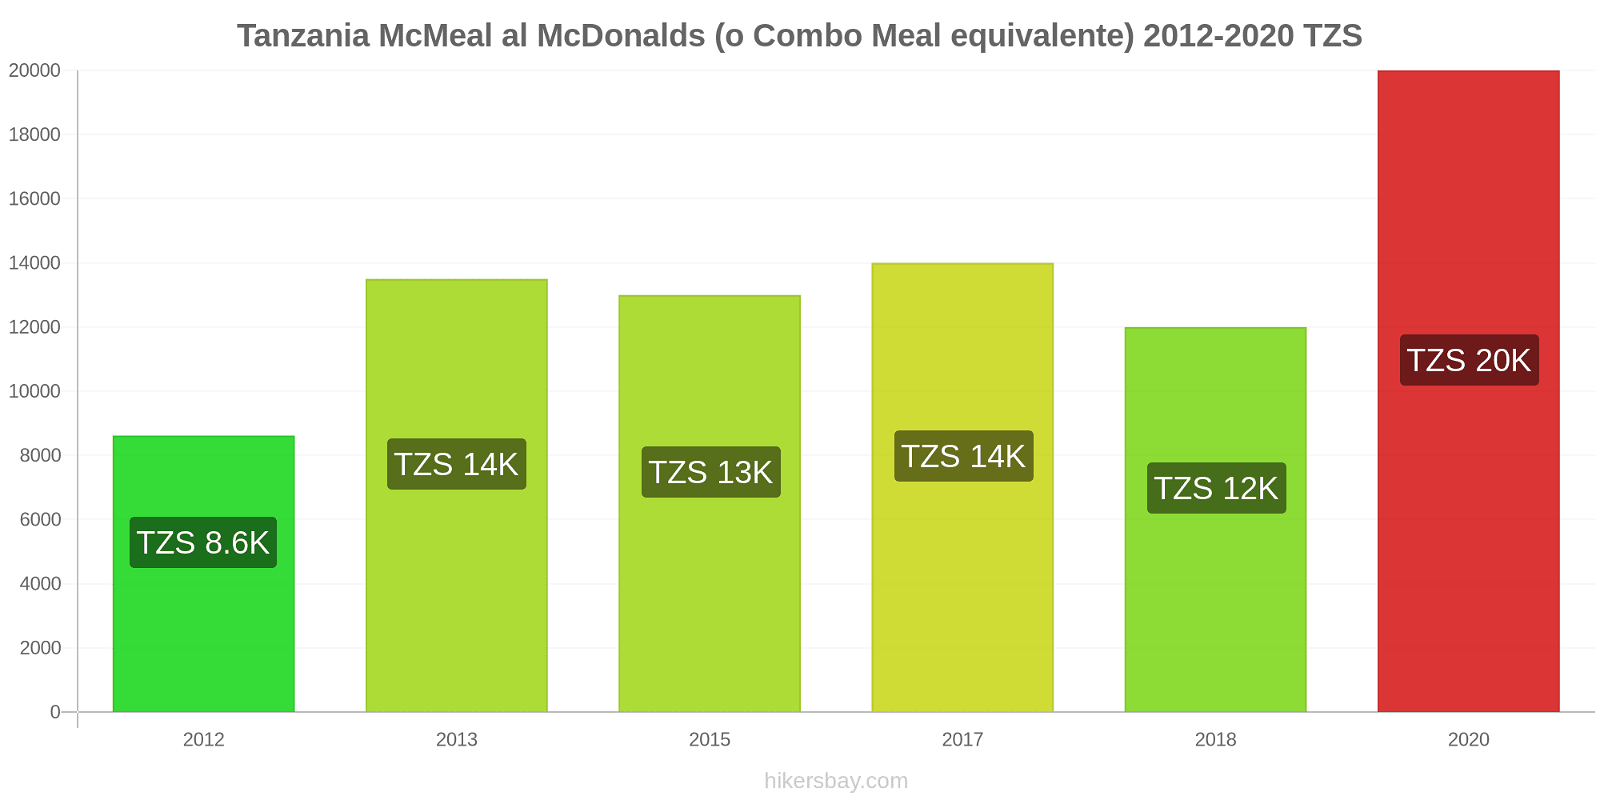 Tanzania variazioni di prezzo McMeal al McDonalds (o in un equivalente fastfood) hikersbay.com